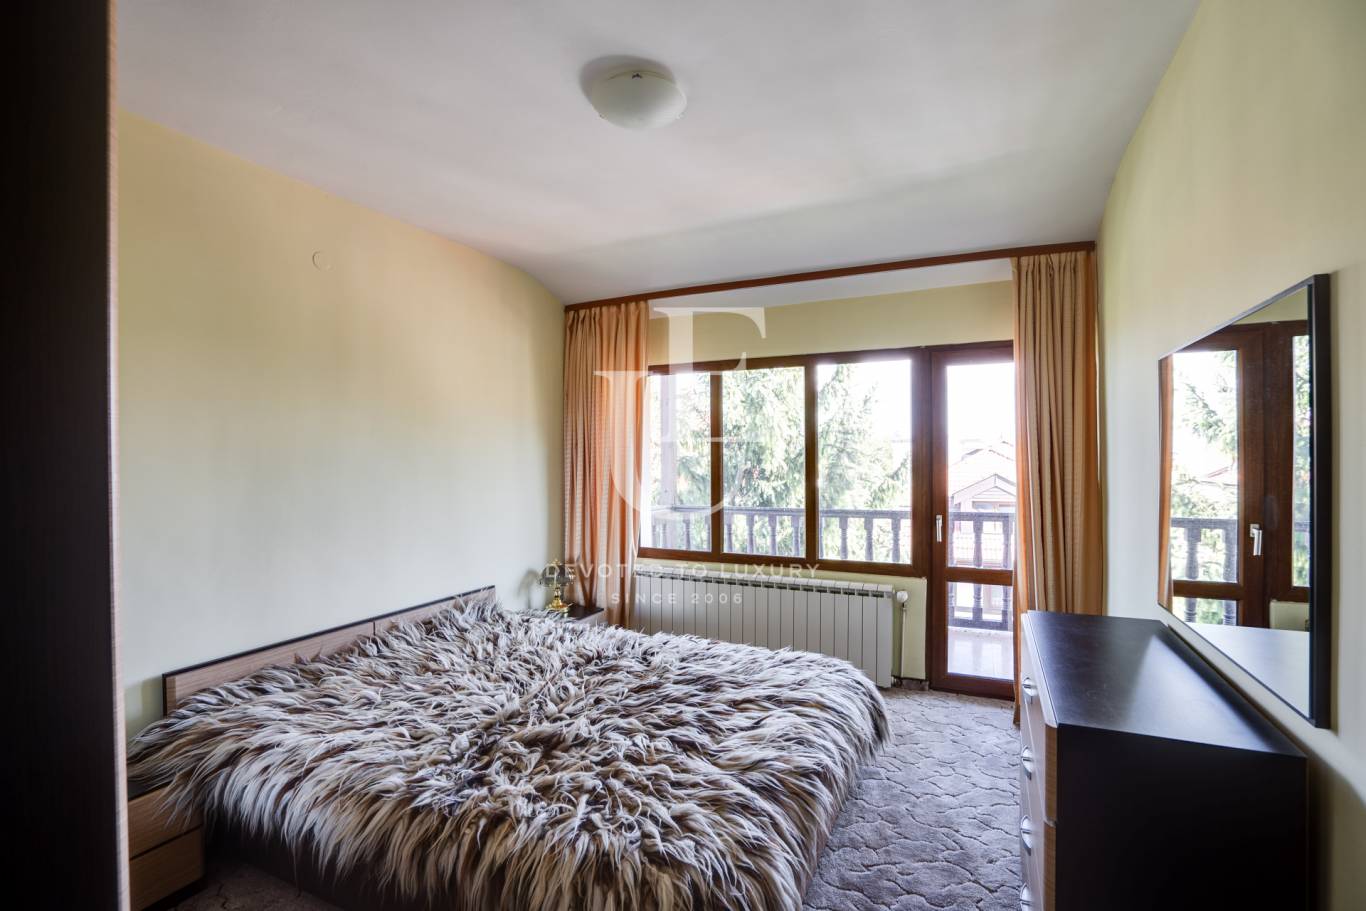 Хотел / Apartment house за продажба в Банско,  - код на имота: K18571 - image 19